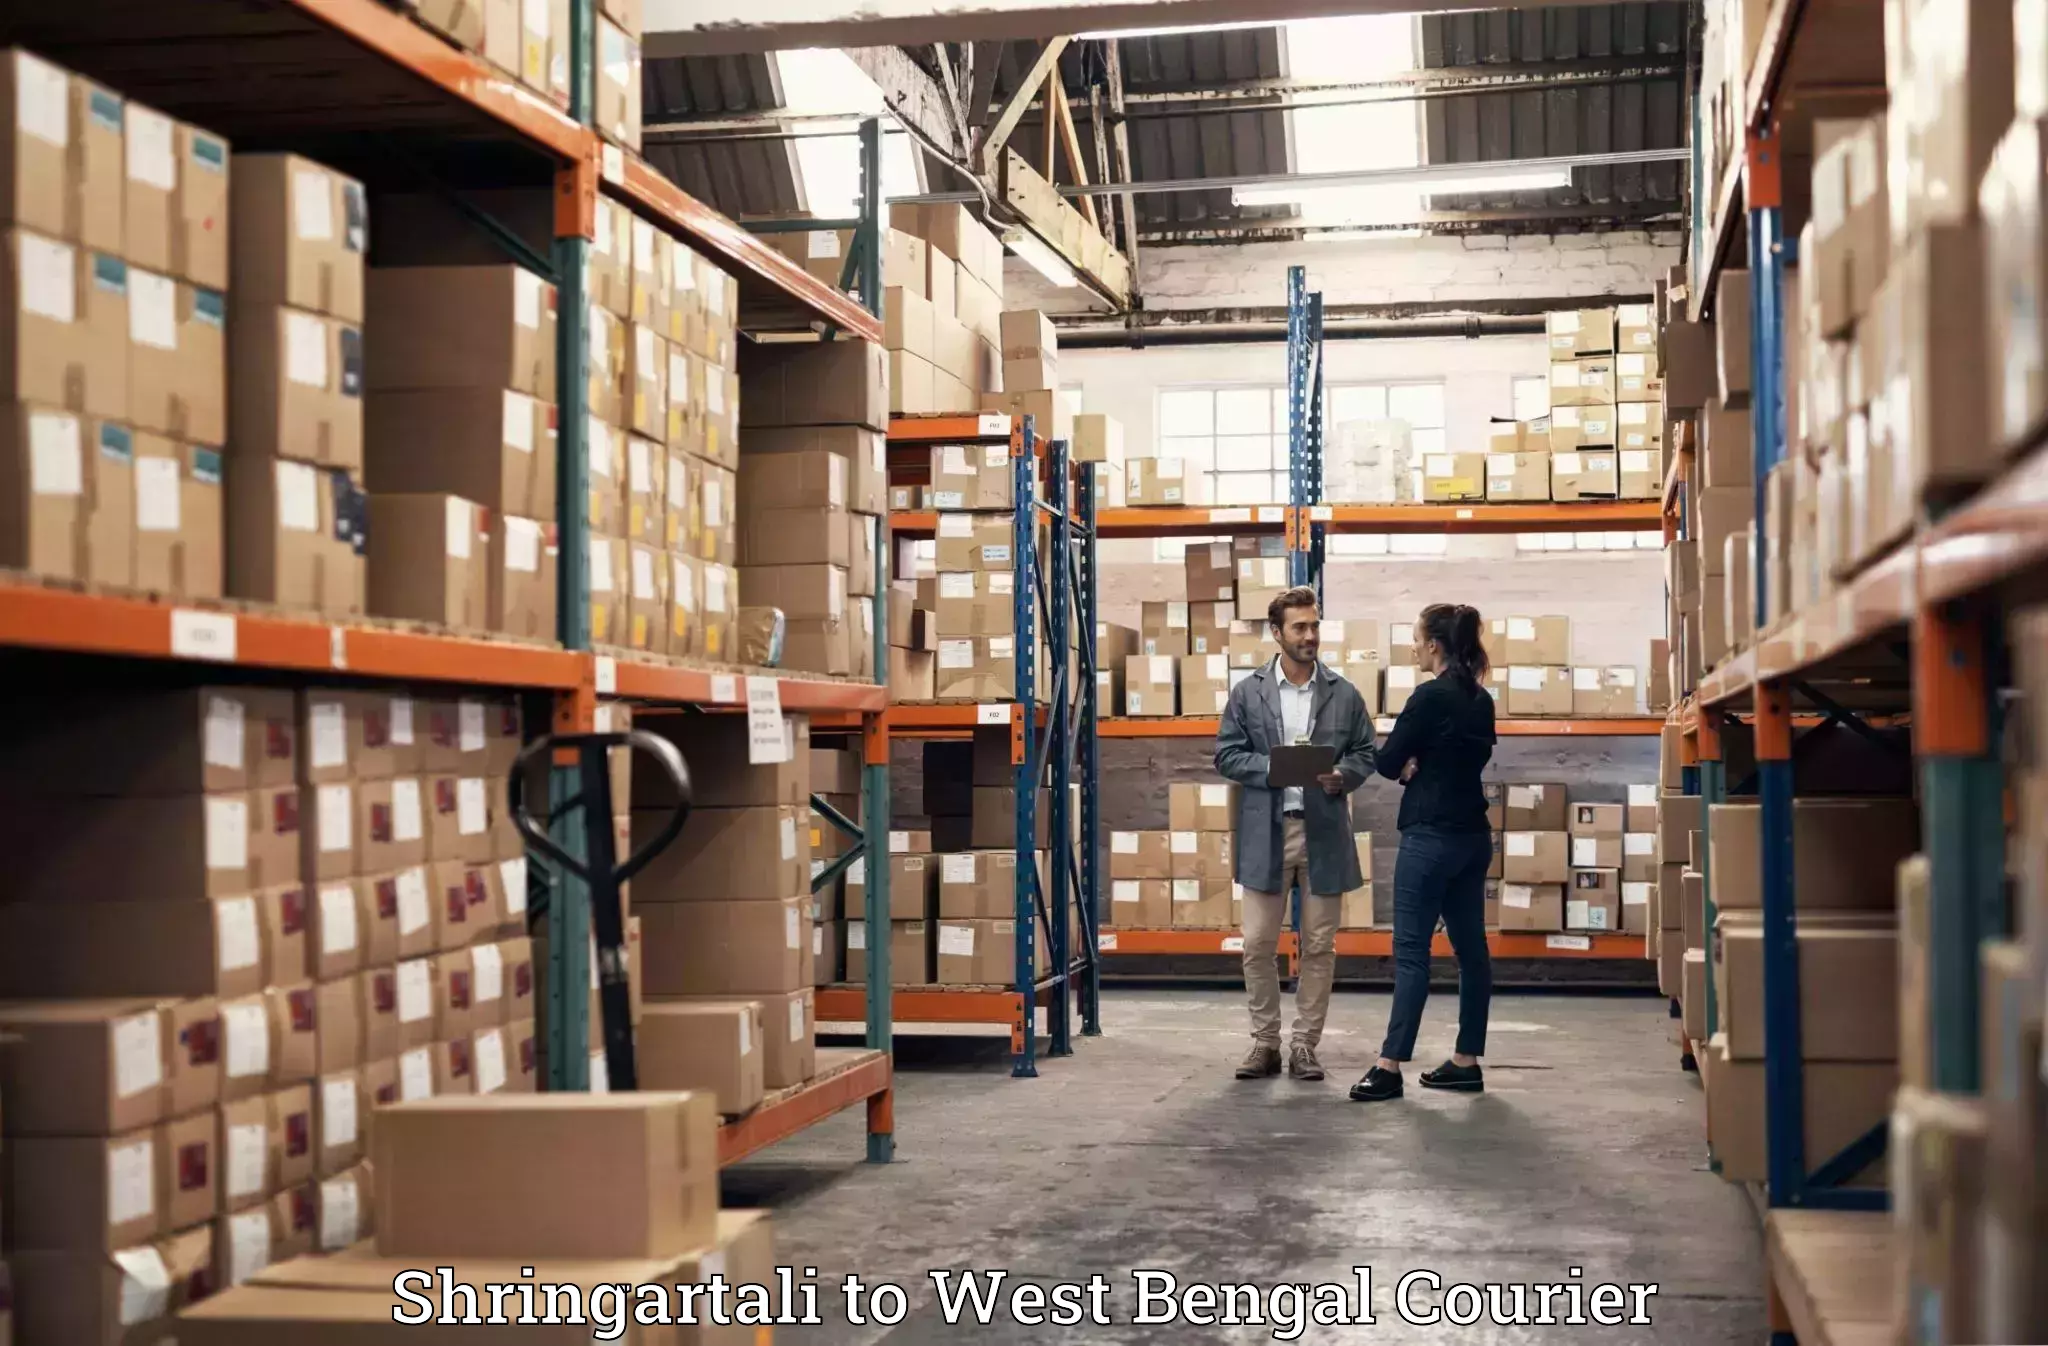 Luggage shipping service Shringartali to Maynaguri